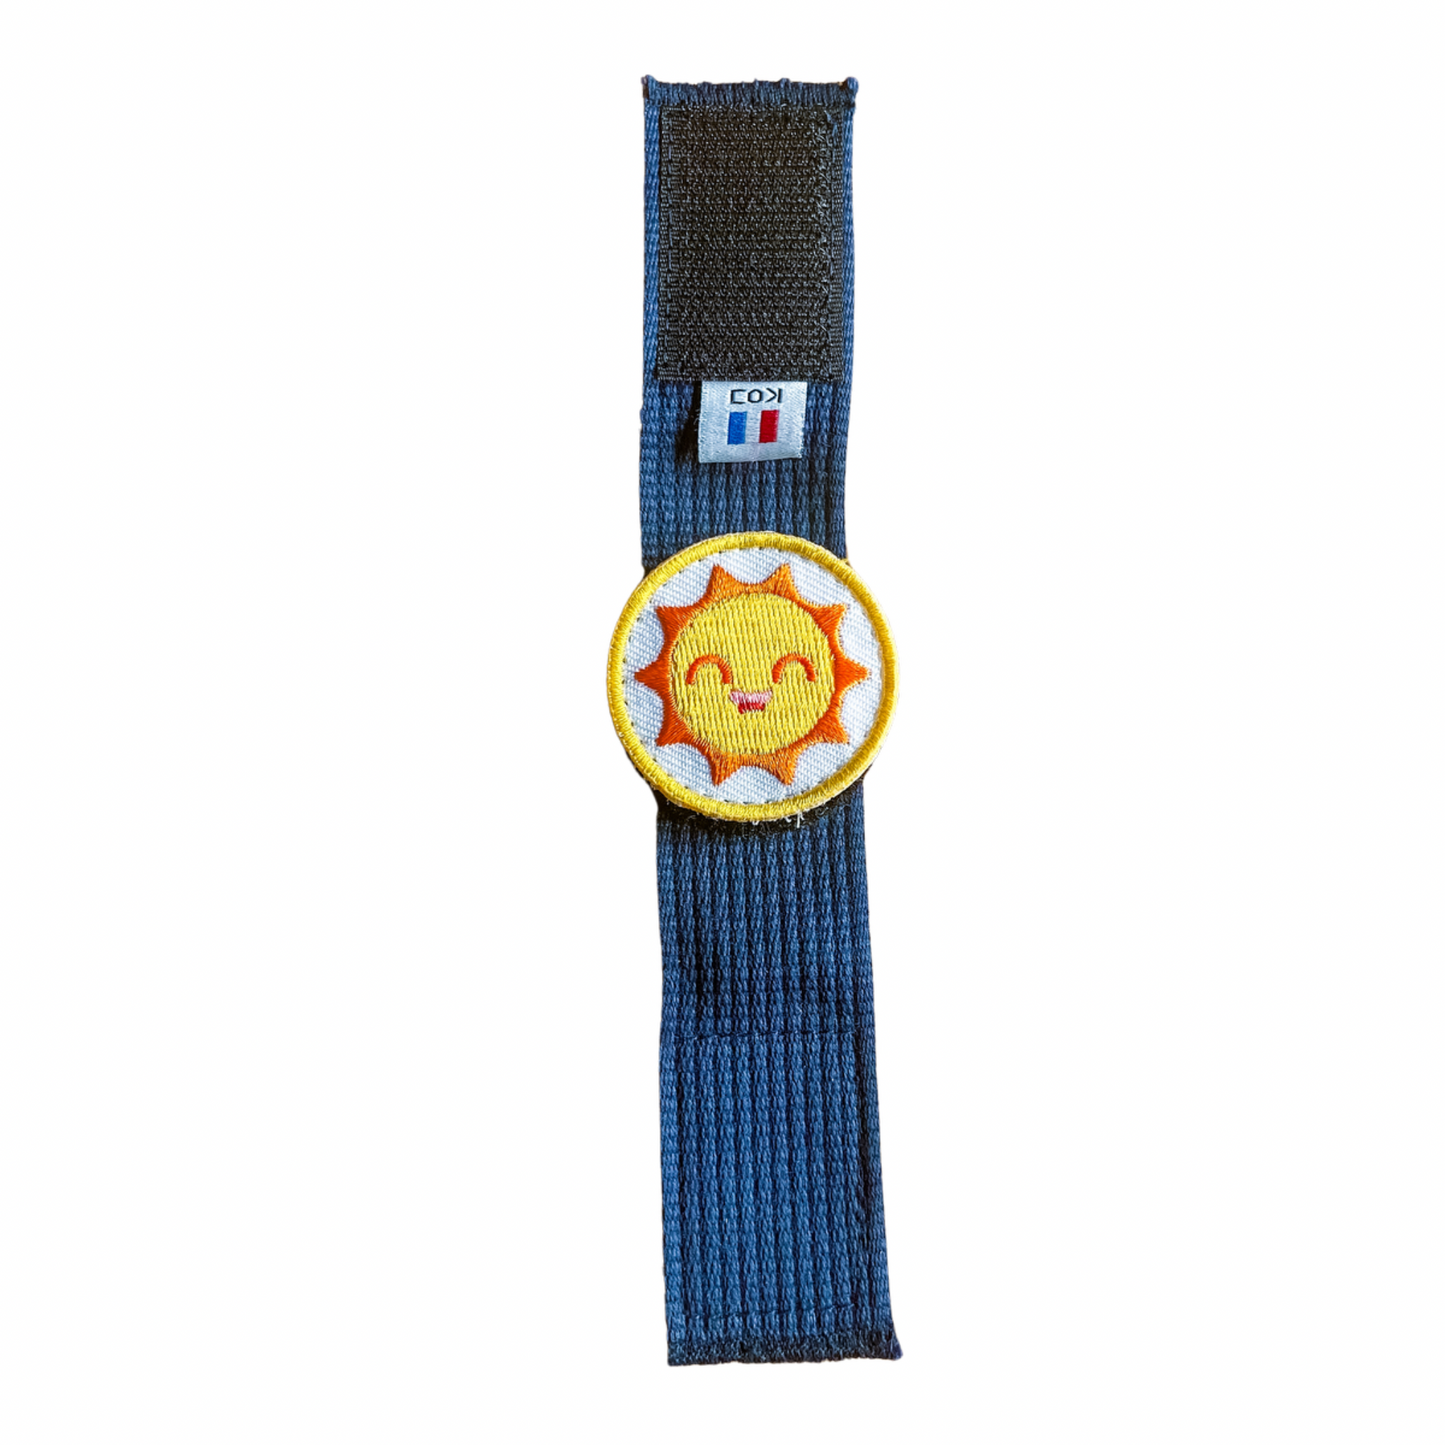 Le bracelet des Émotions 3 badges